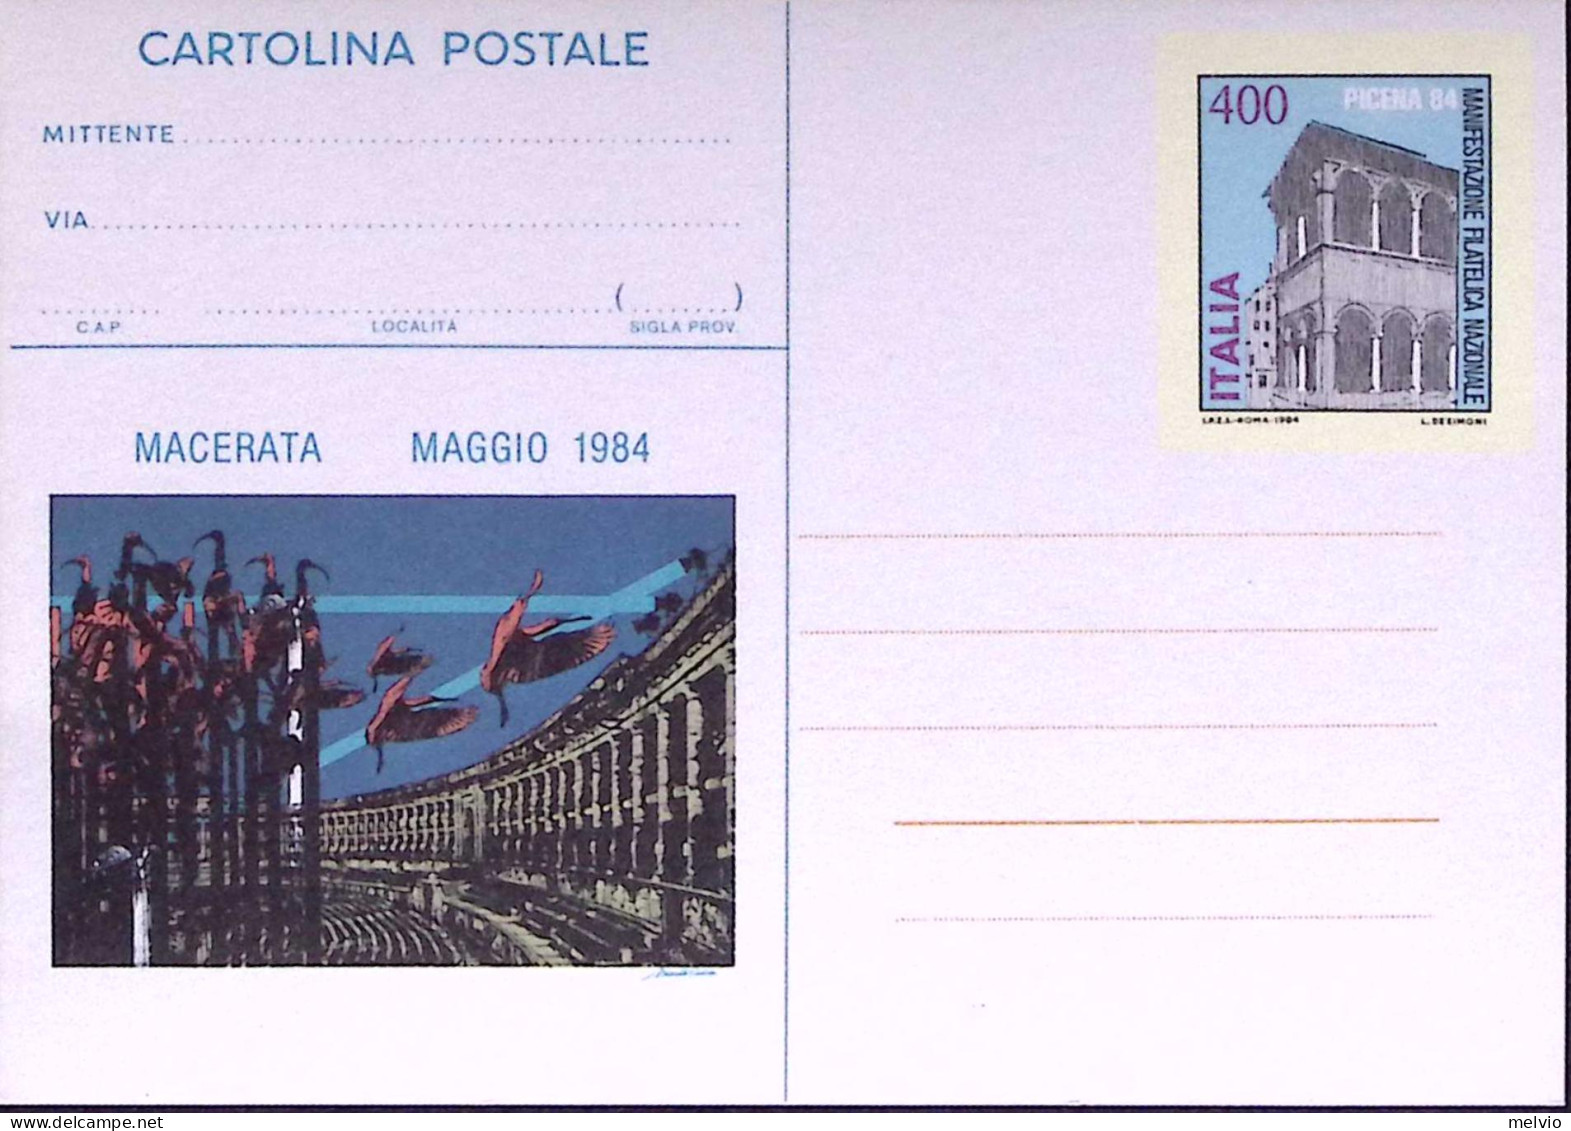 1984-Cartolina Postale Lire 400 Picena 30924 Nuova - Stamped Stationery